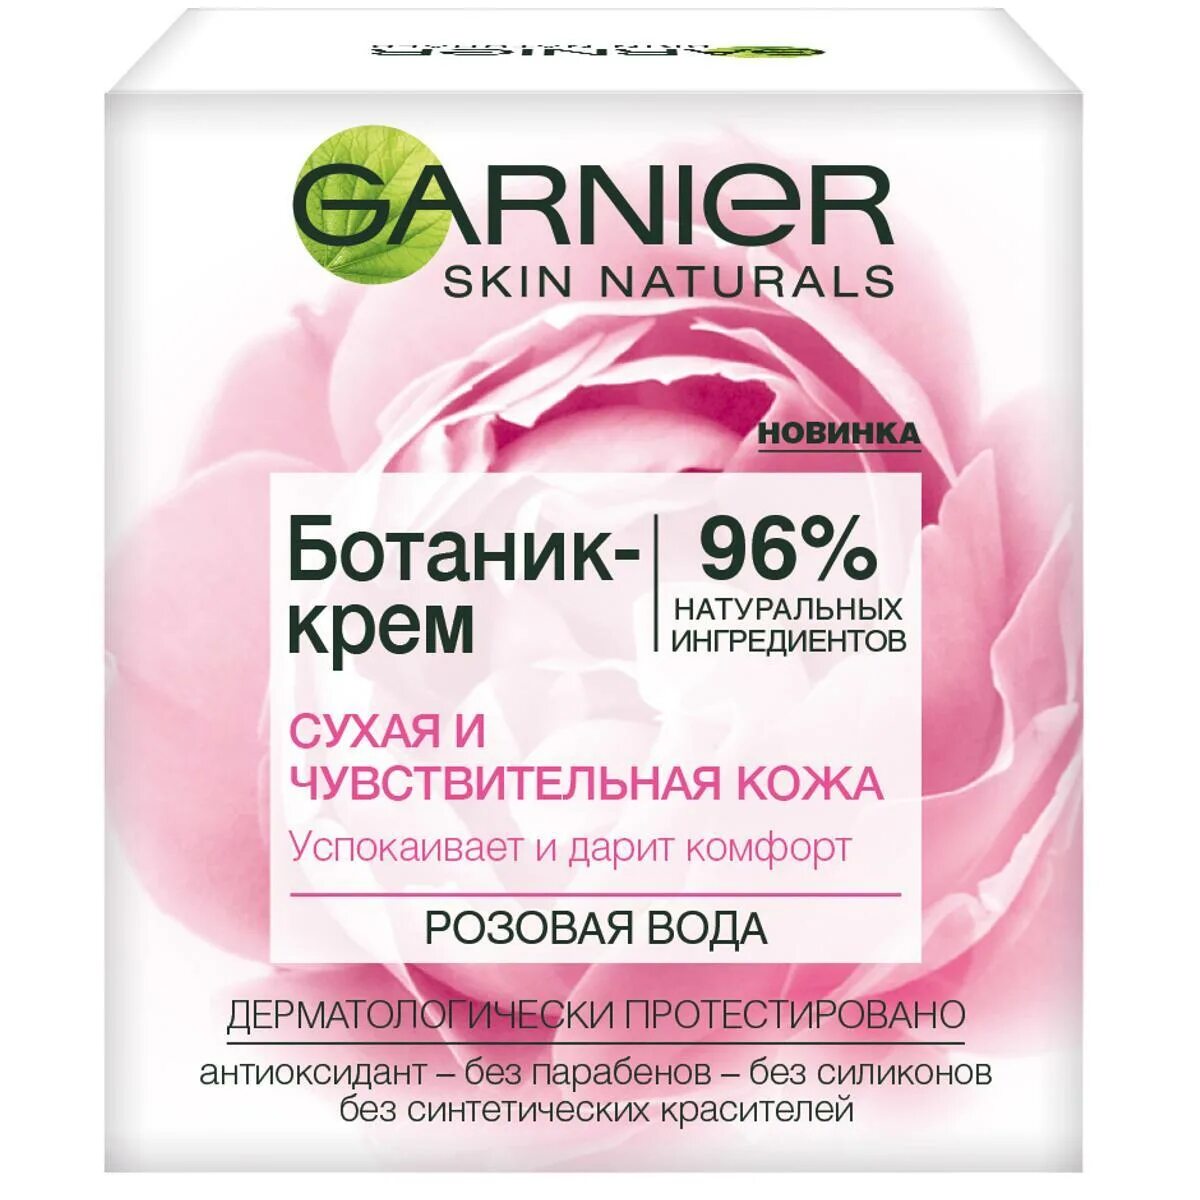 Гарньер розовый отзывы. Ботаник-крем Garnier, розовая вода, для сухой и чувствительной кожи, 50 мл. Крем Garnier увлажняющий ботаник крем. Garnier ботаник-крем для лица розовая вода.